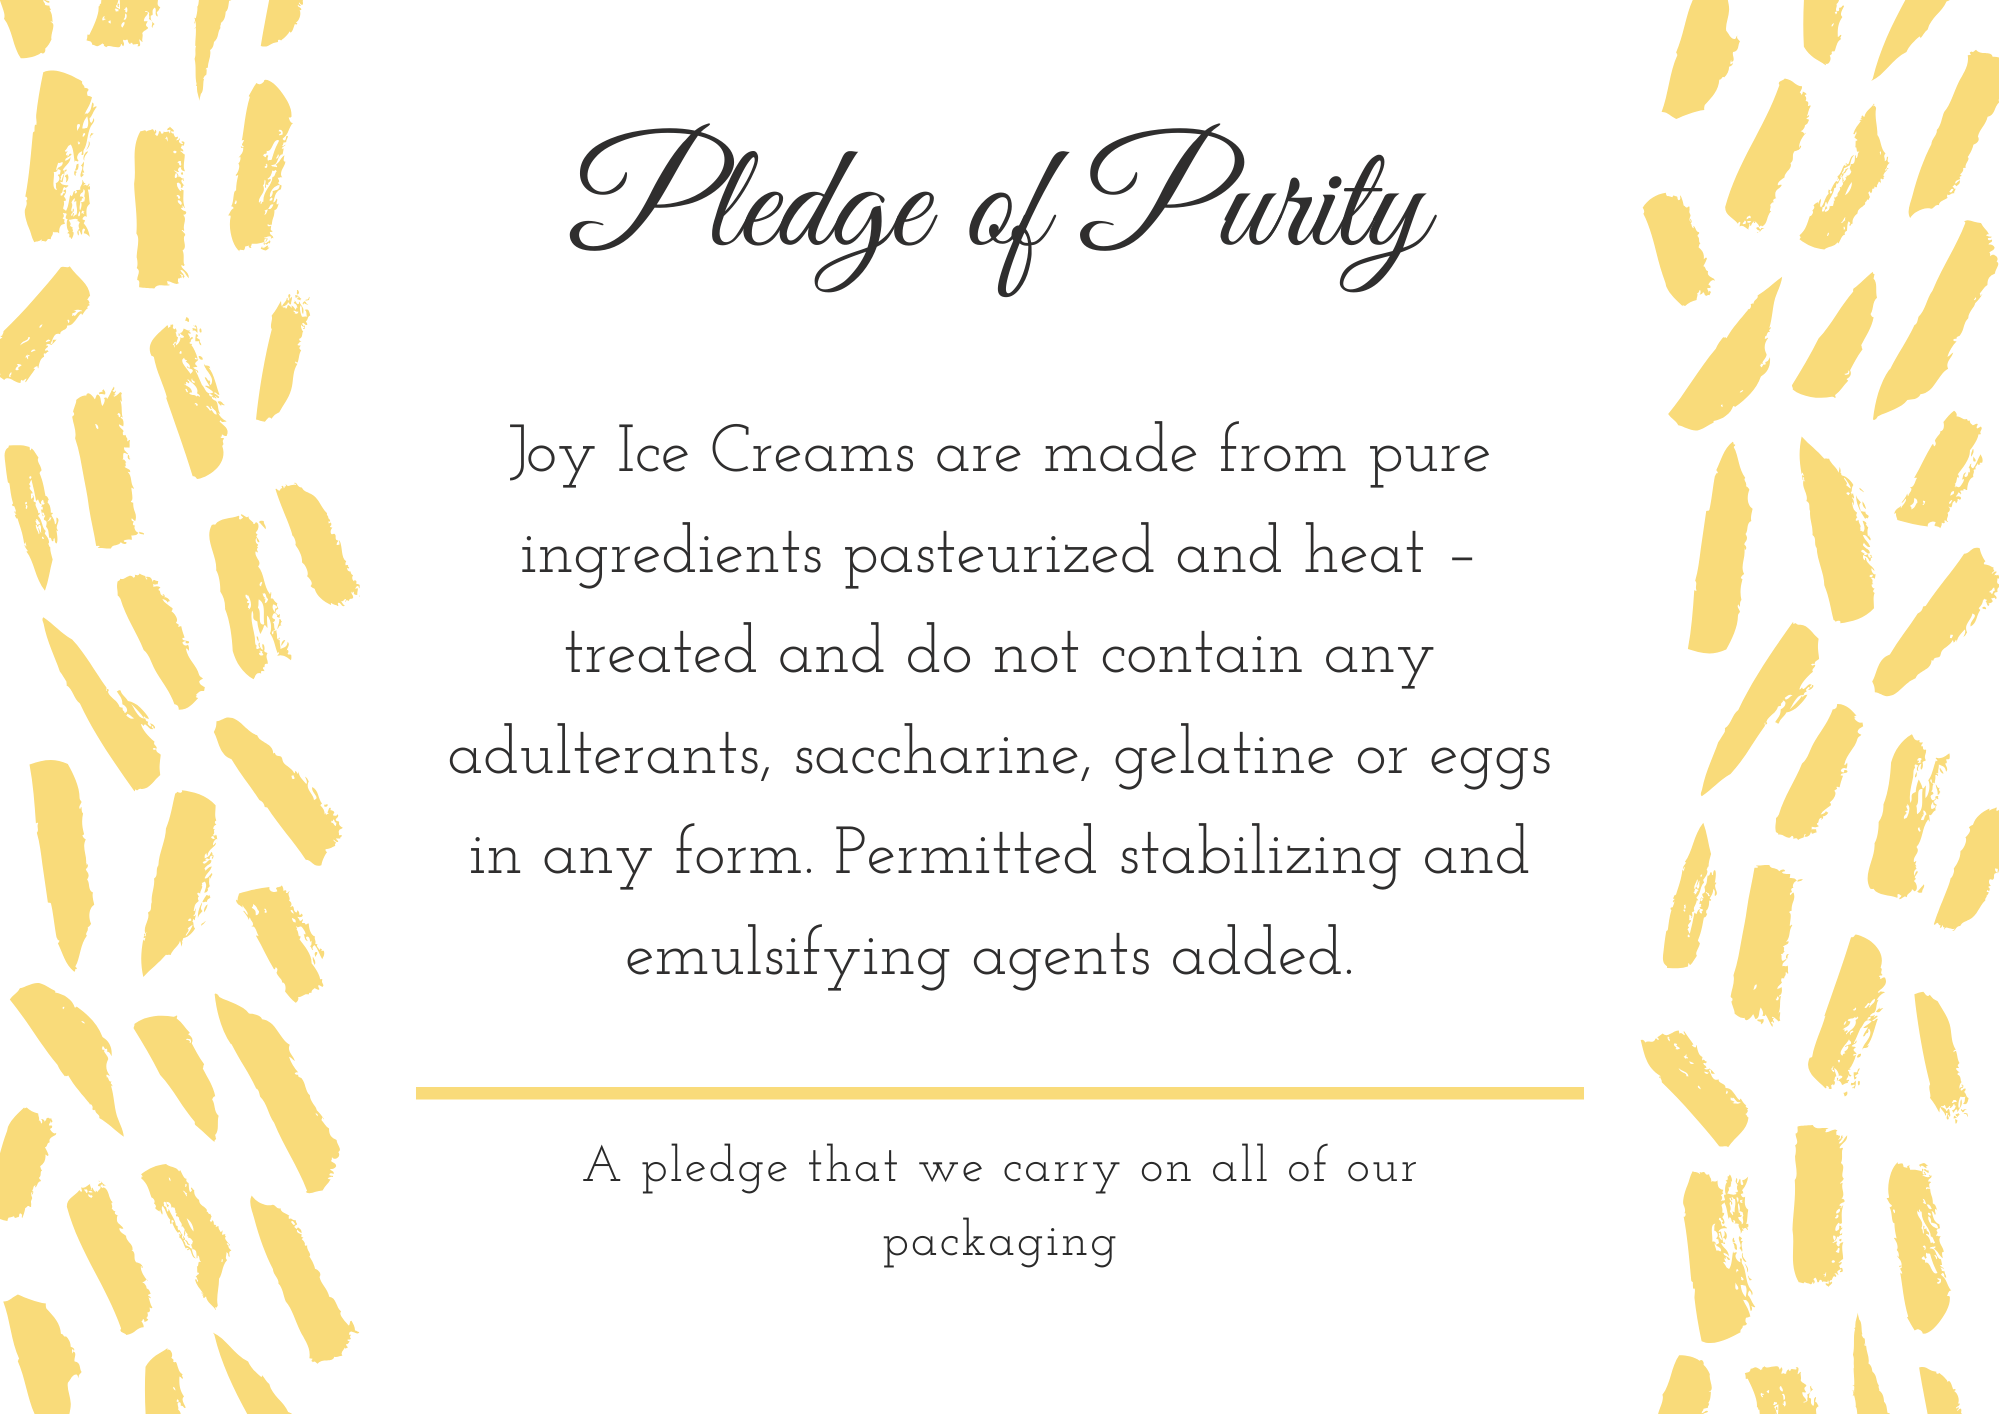 Joy Ice Creams - Pledge of Purity